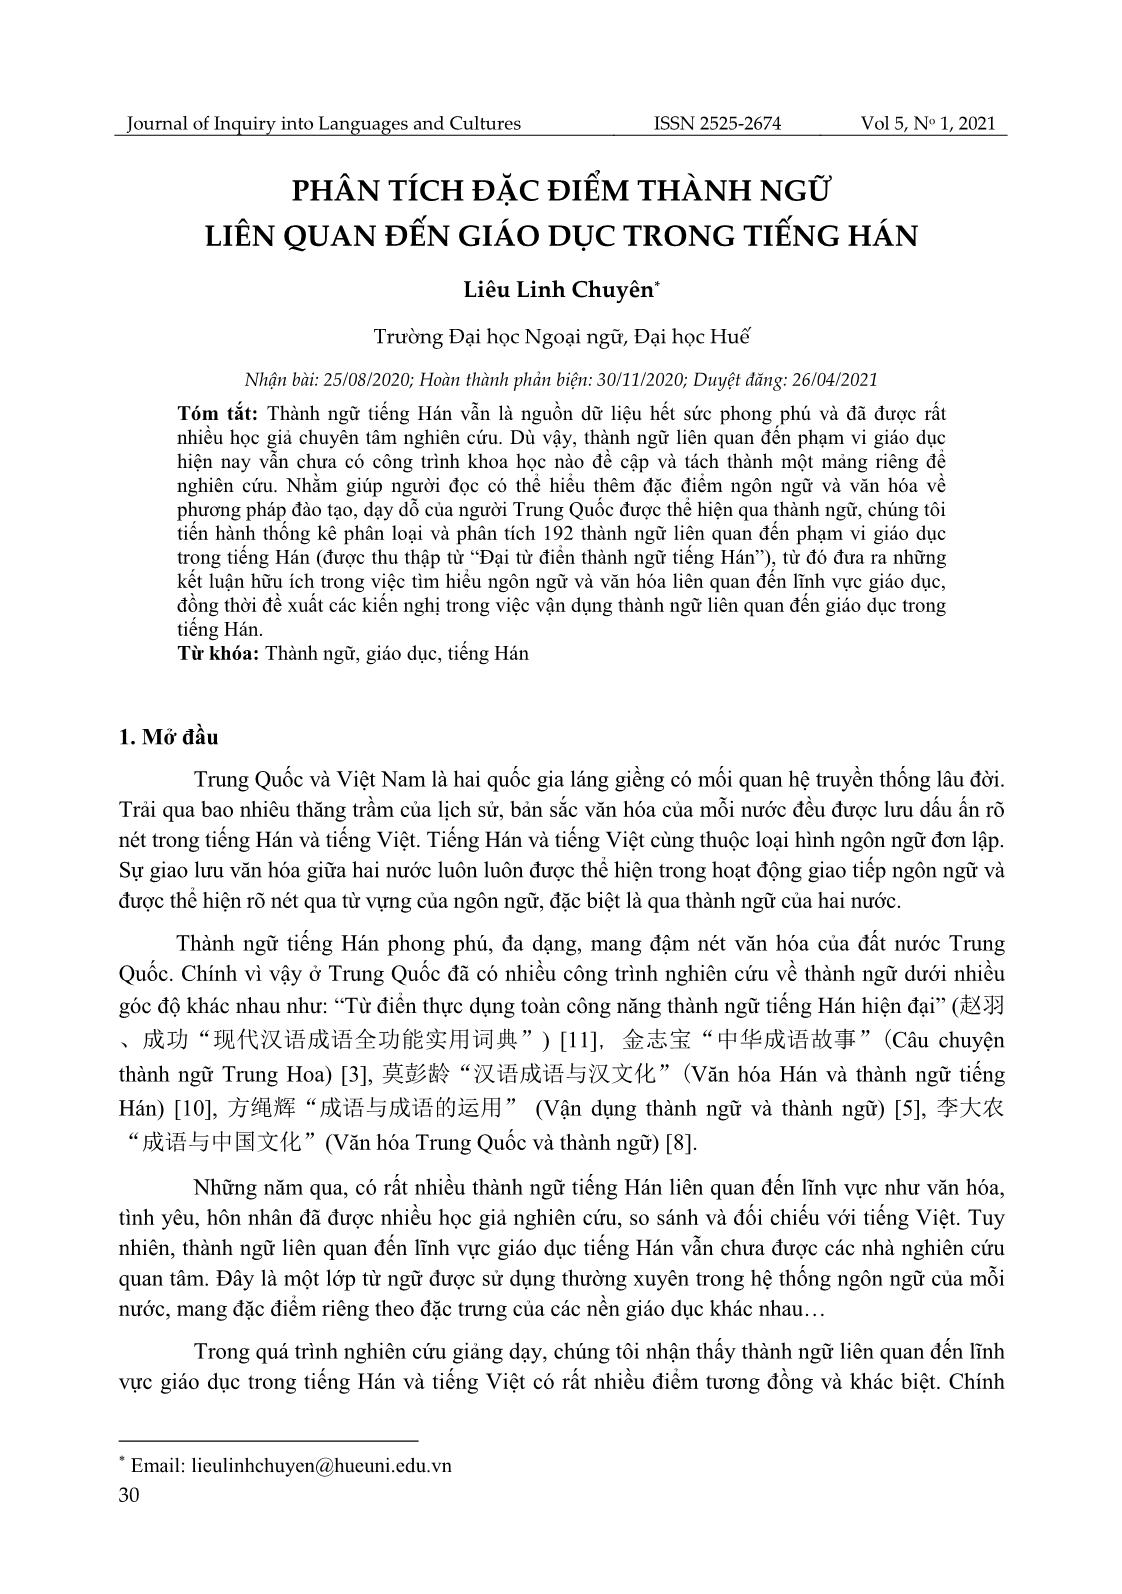 Phân tích đặc điểm thành ngữ liên quan đến giáo dục trong tiếng Hán trang 1